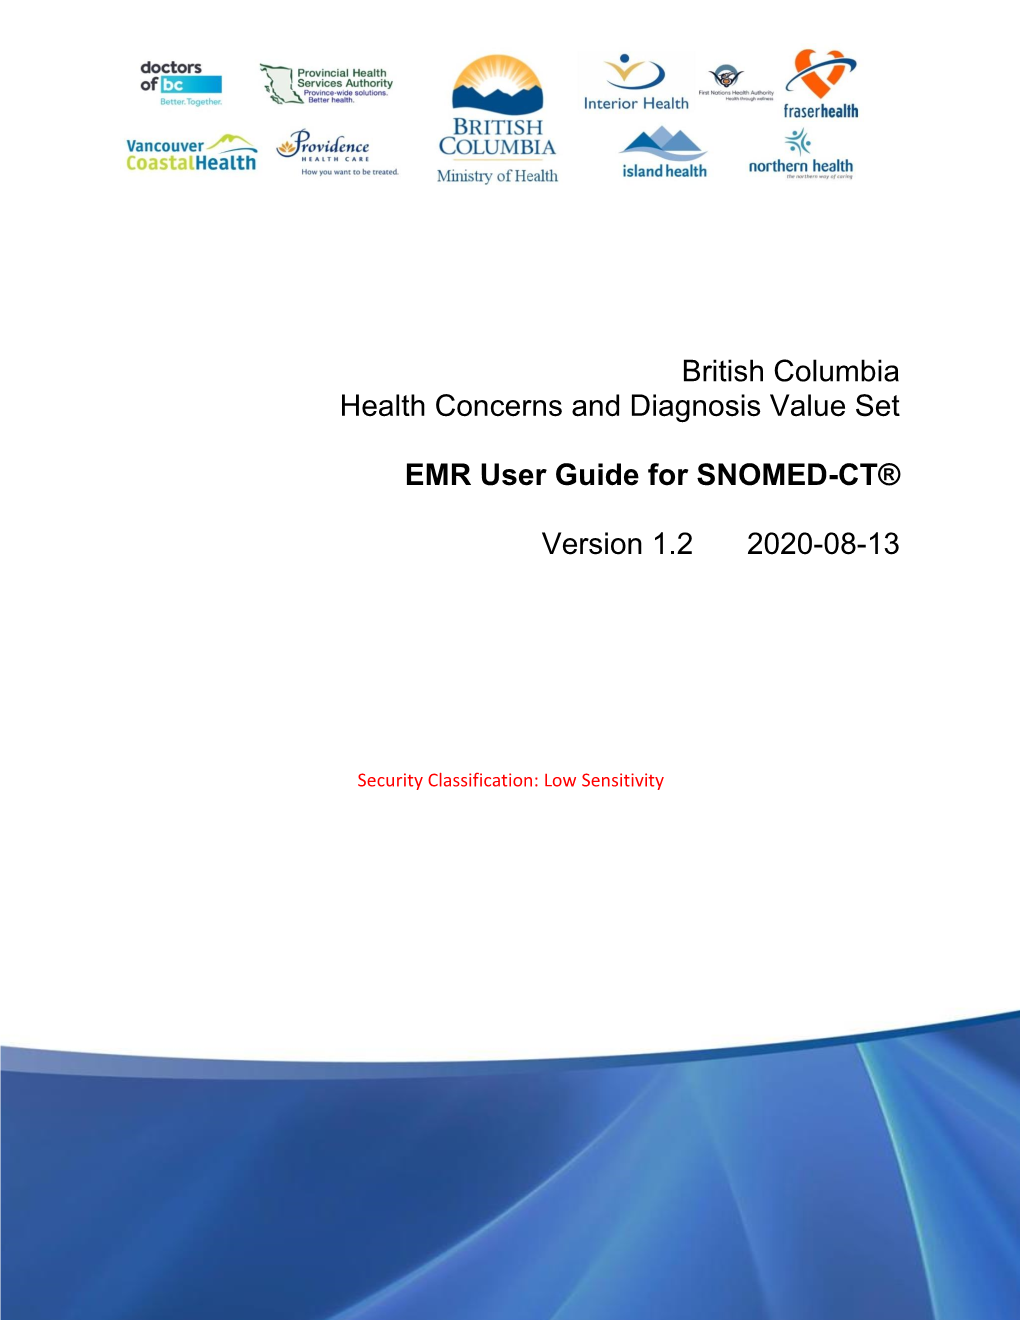 EMR User Guide for SNOMED-CT®